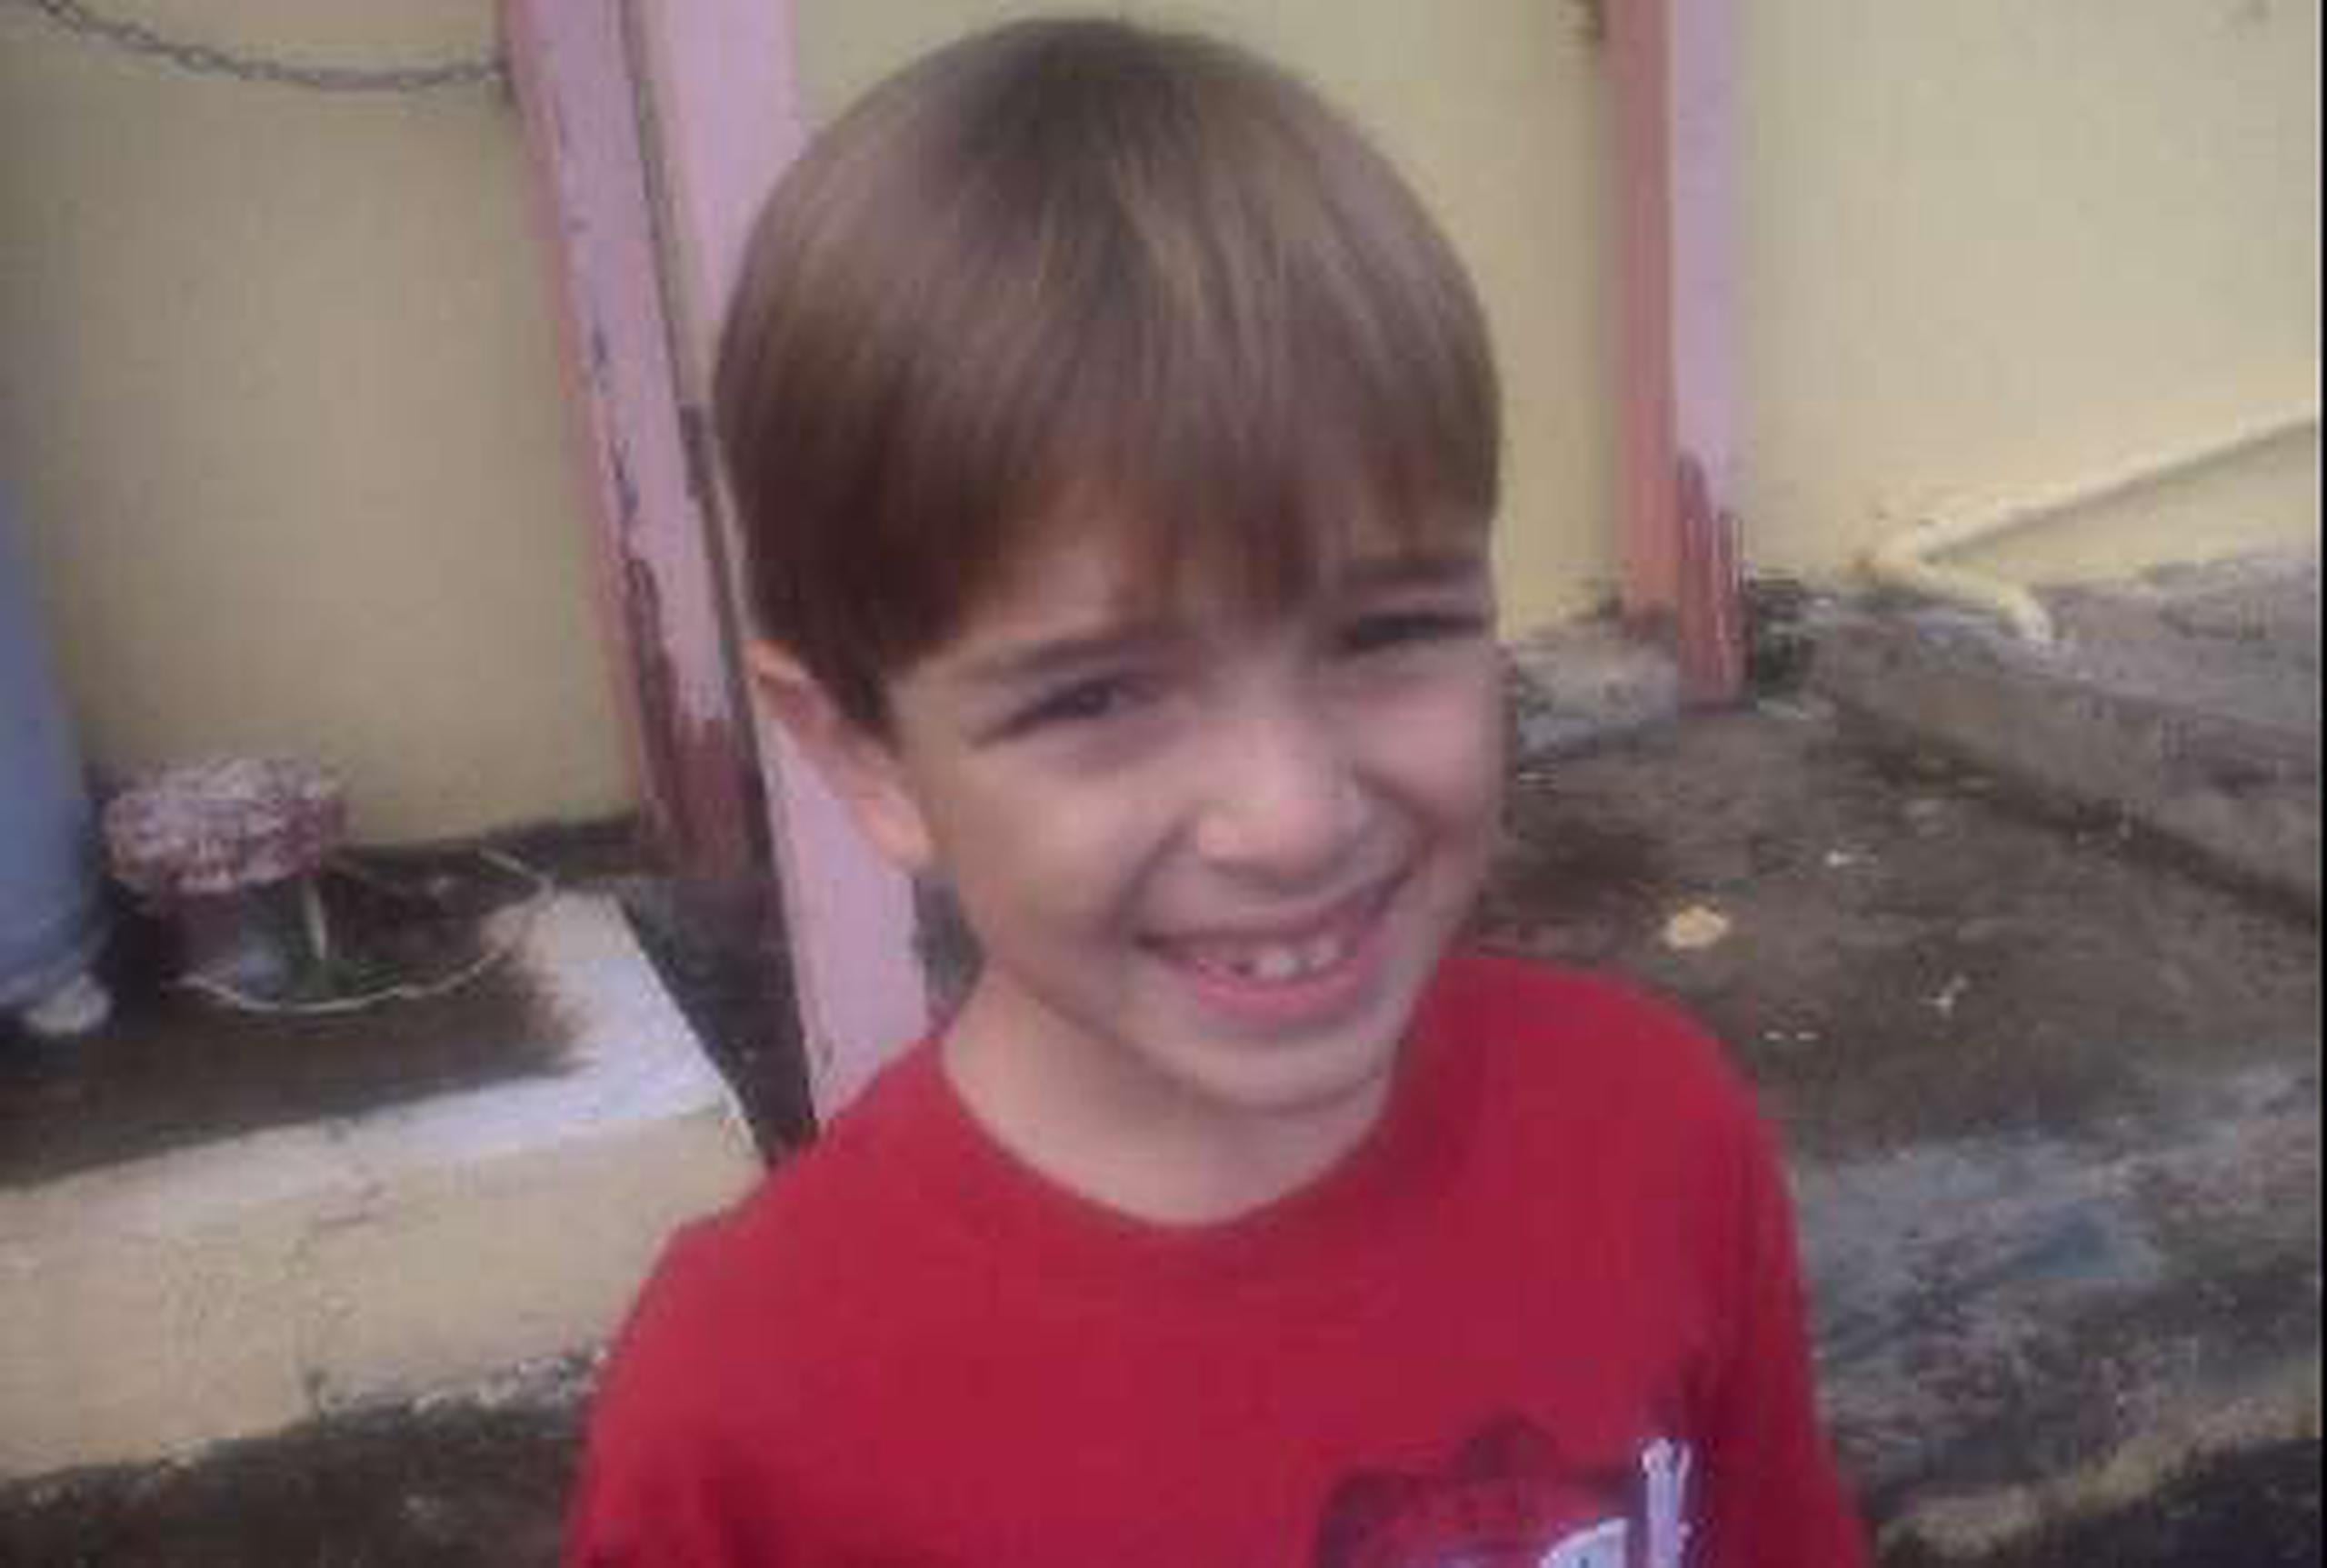 El niño Lorenzo González Cacho, de ocho años, fue asesinado  el 9 de marzo del año pasado, cuando dormía en la residencia de su madre en la urbanización Dorado del Mar.&nbsp;<font color="yellow">(Archivo)</font>